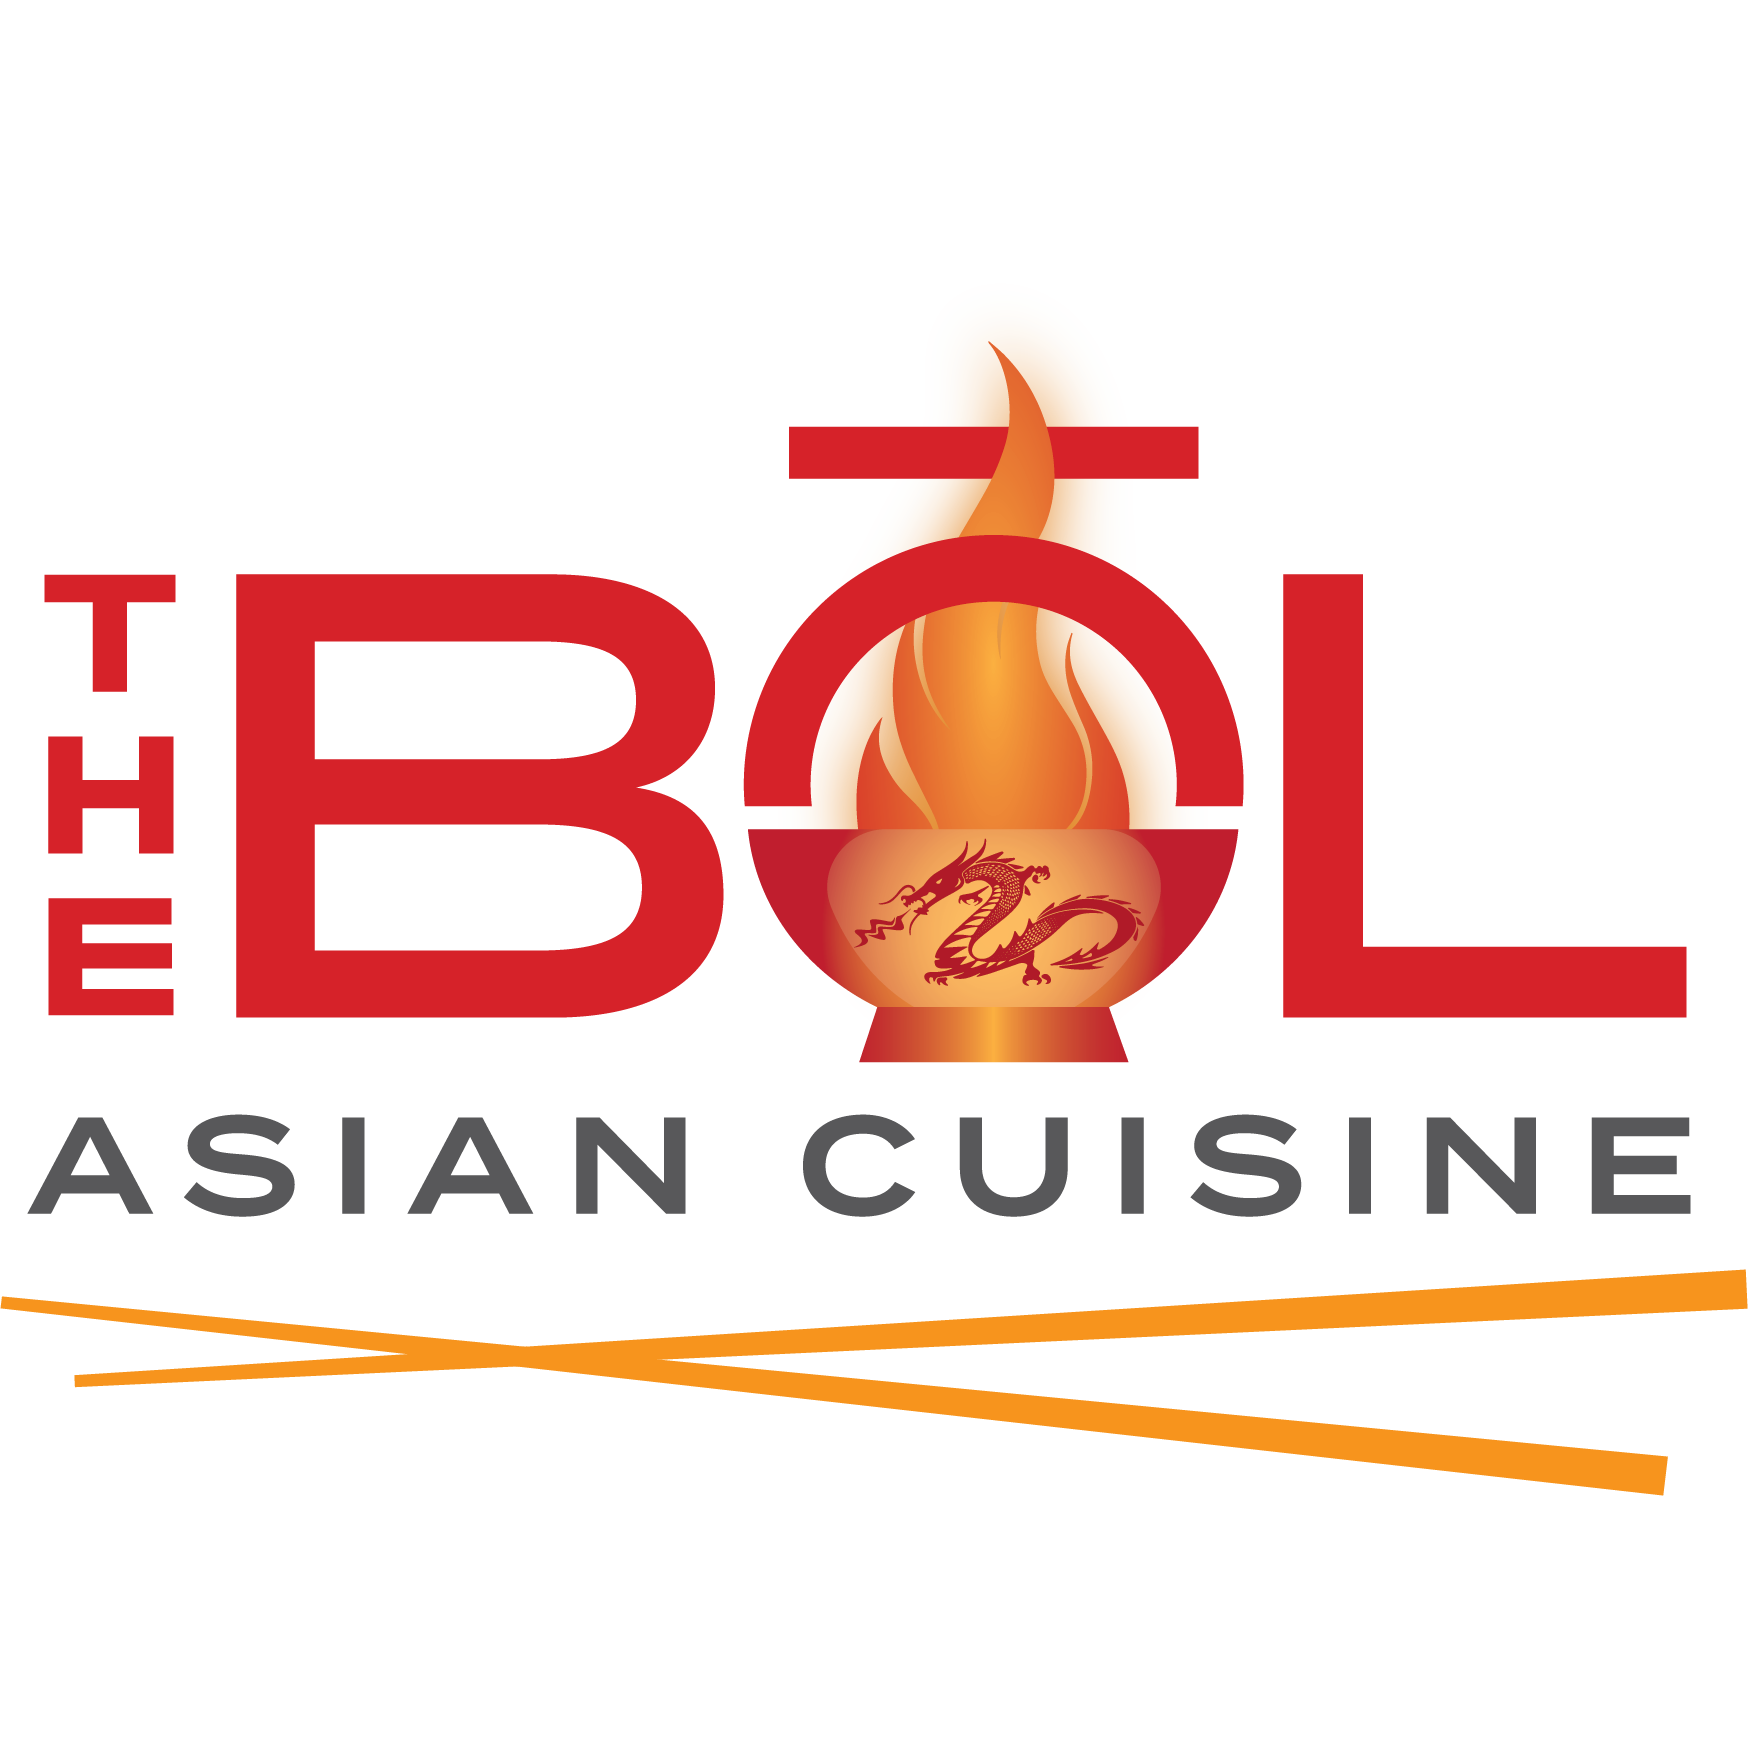 The BOL Asian Cuisine